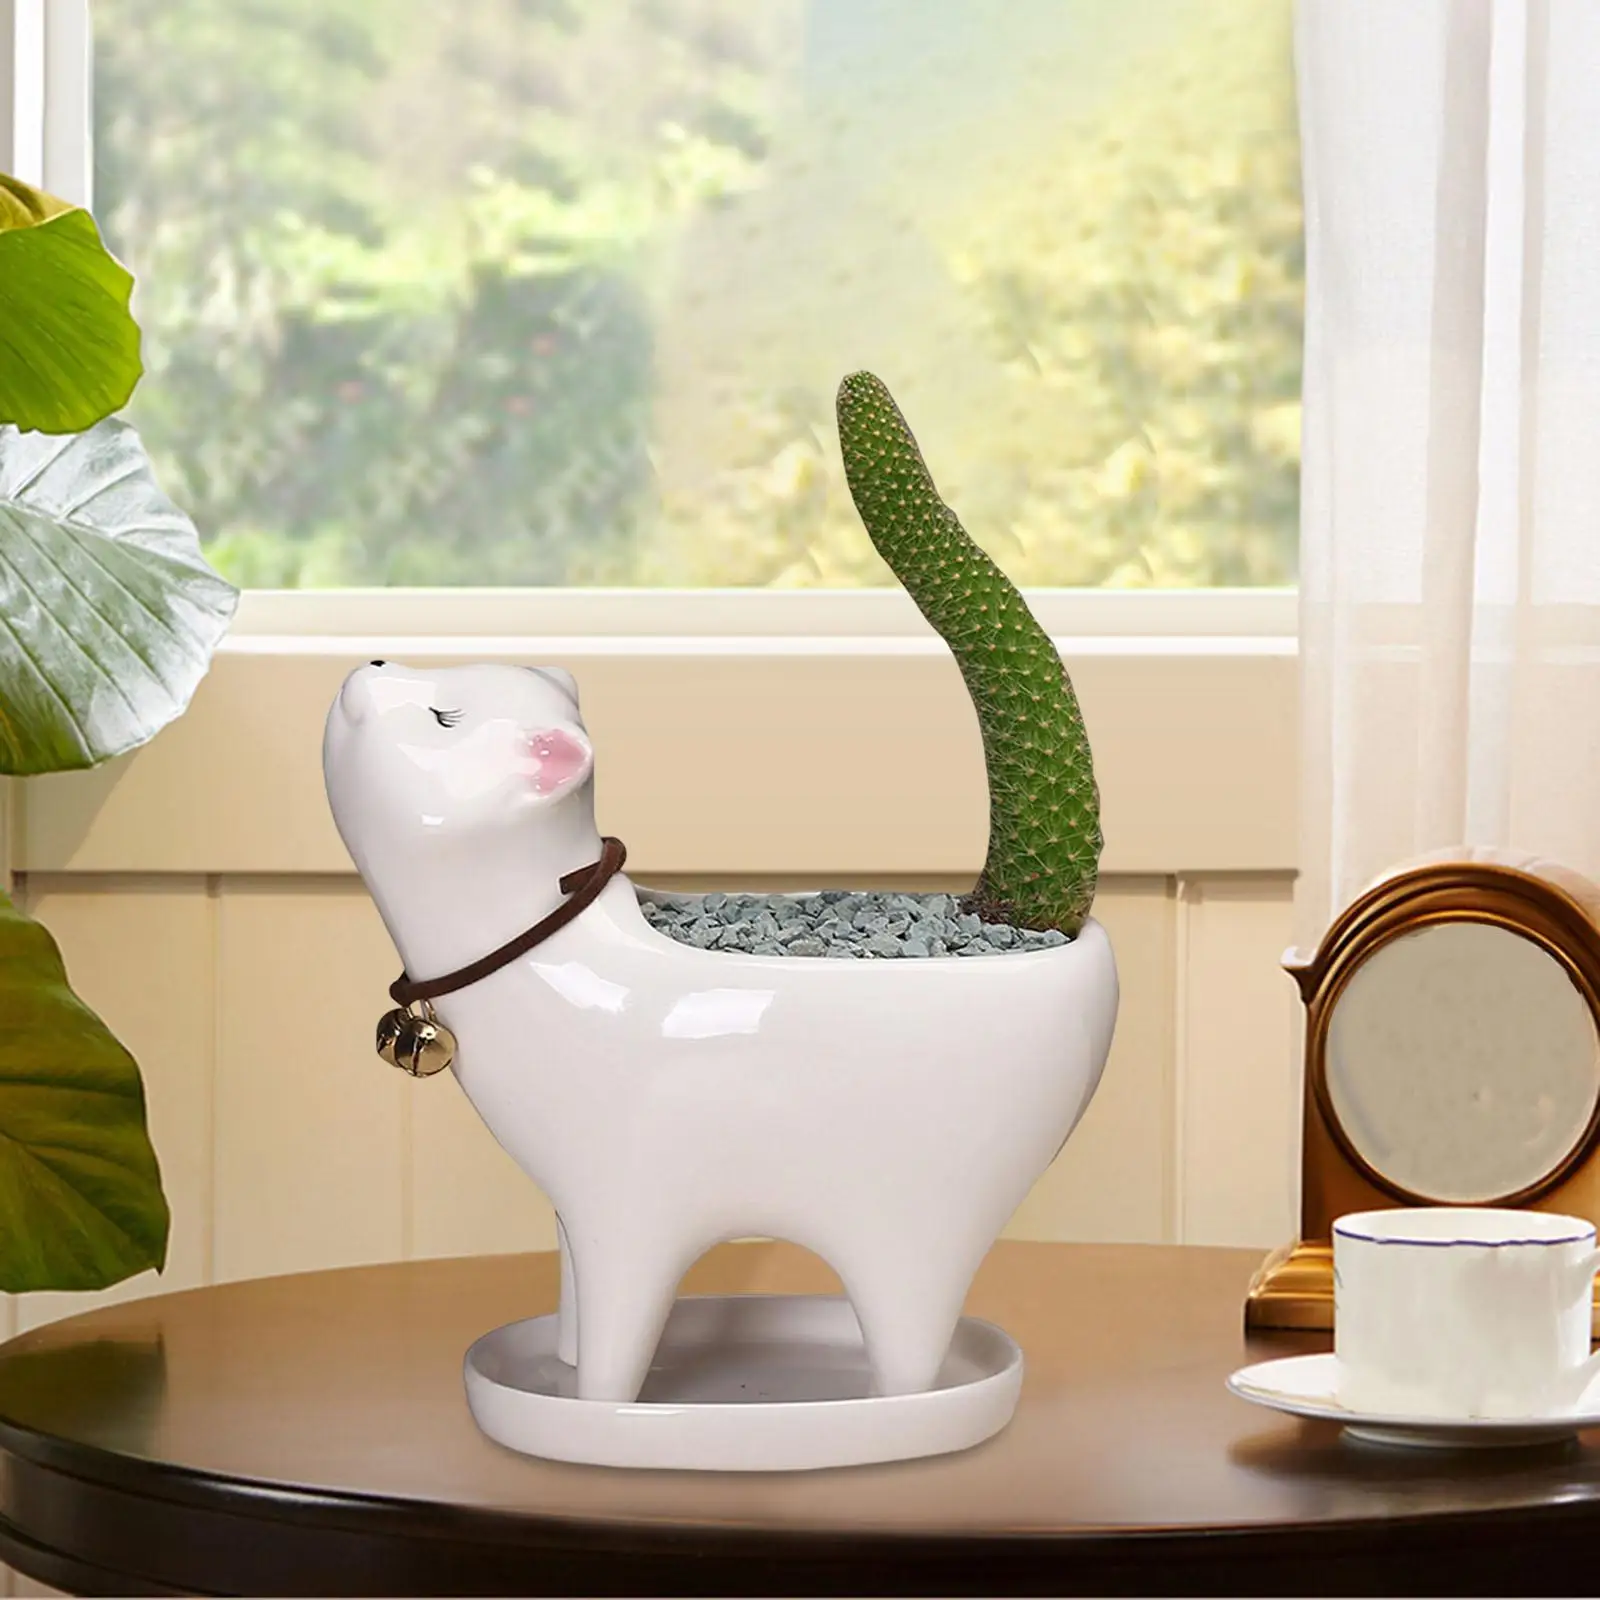 Ceramic Succulent Planter Pots Flowerpot Ornaments Cute Cat Tail Plant Holder Cactus Flower Container Vase Pot for Home Decor